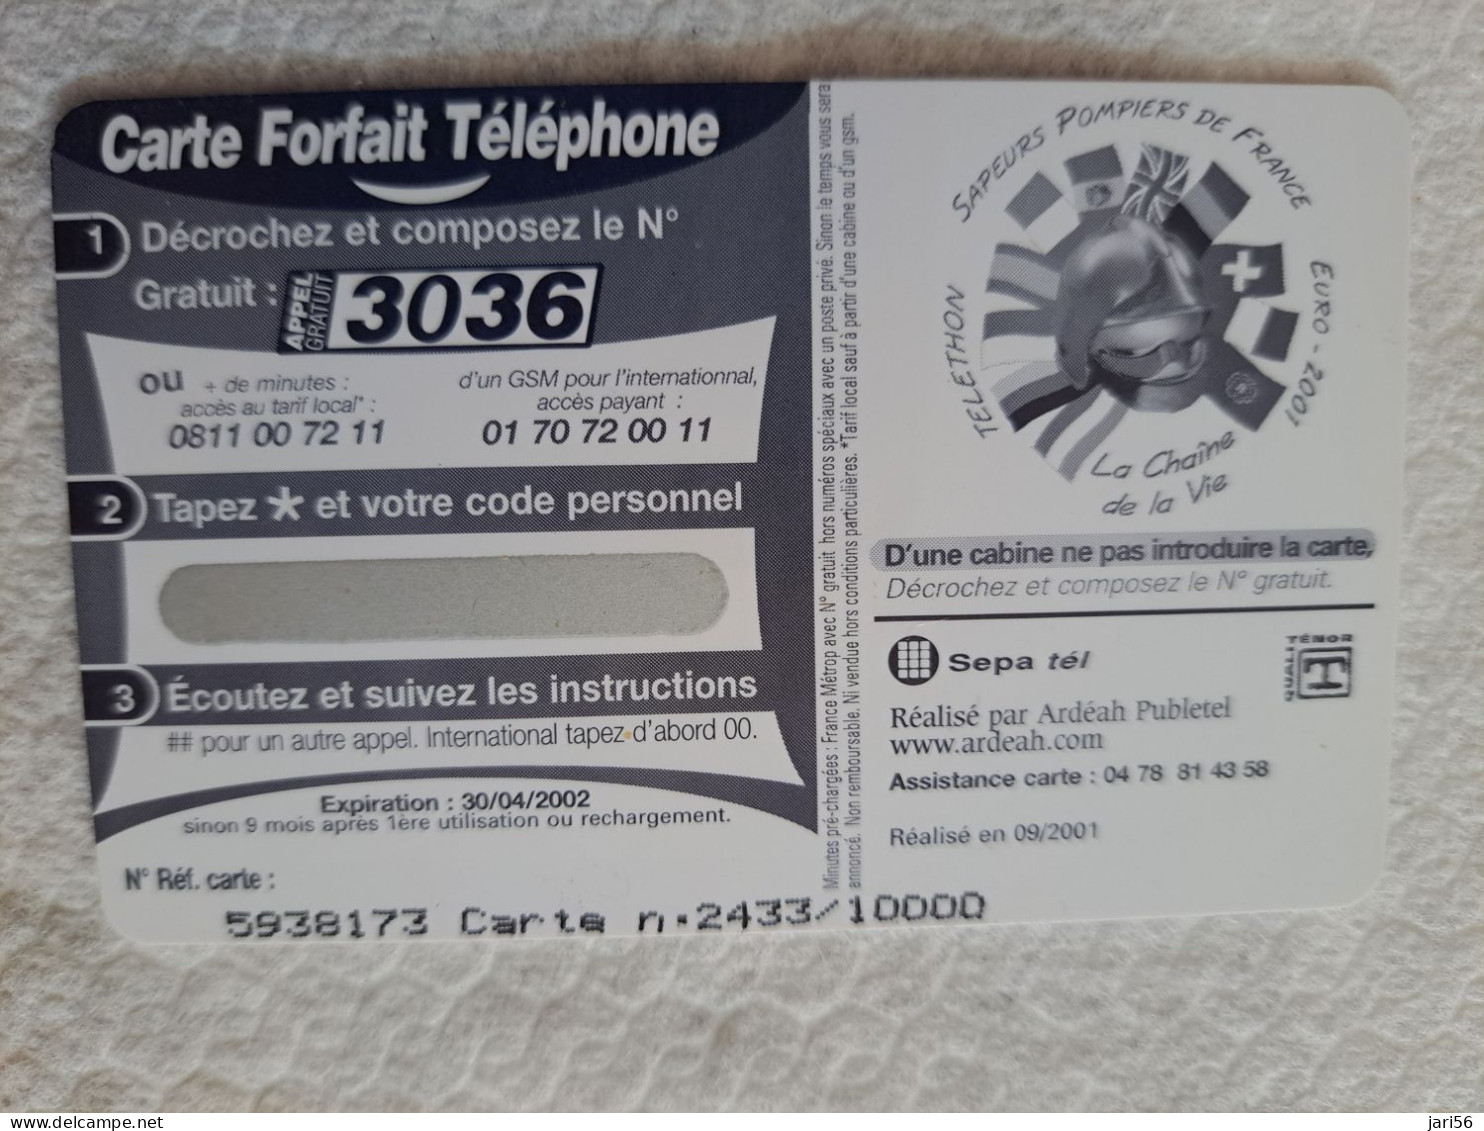 FRANCE/ 20 FR/ €3,05 / TELETHON 2001/ SAPEURS POMPIERS DE FRANCE     /   PREPAID  / MINT    ** 14563** - Voorafbetaalde Kaarten: Gsm